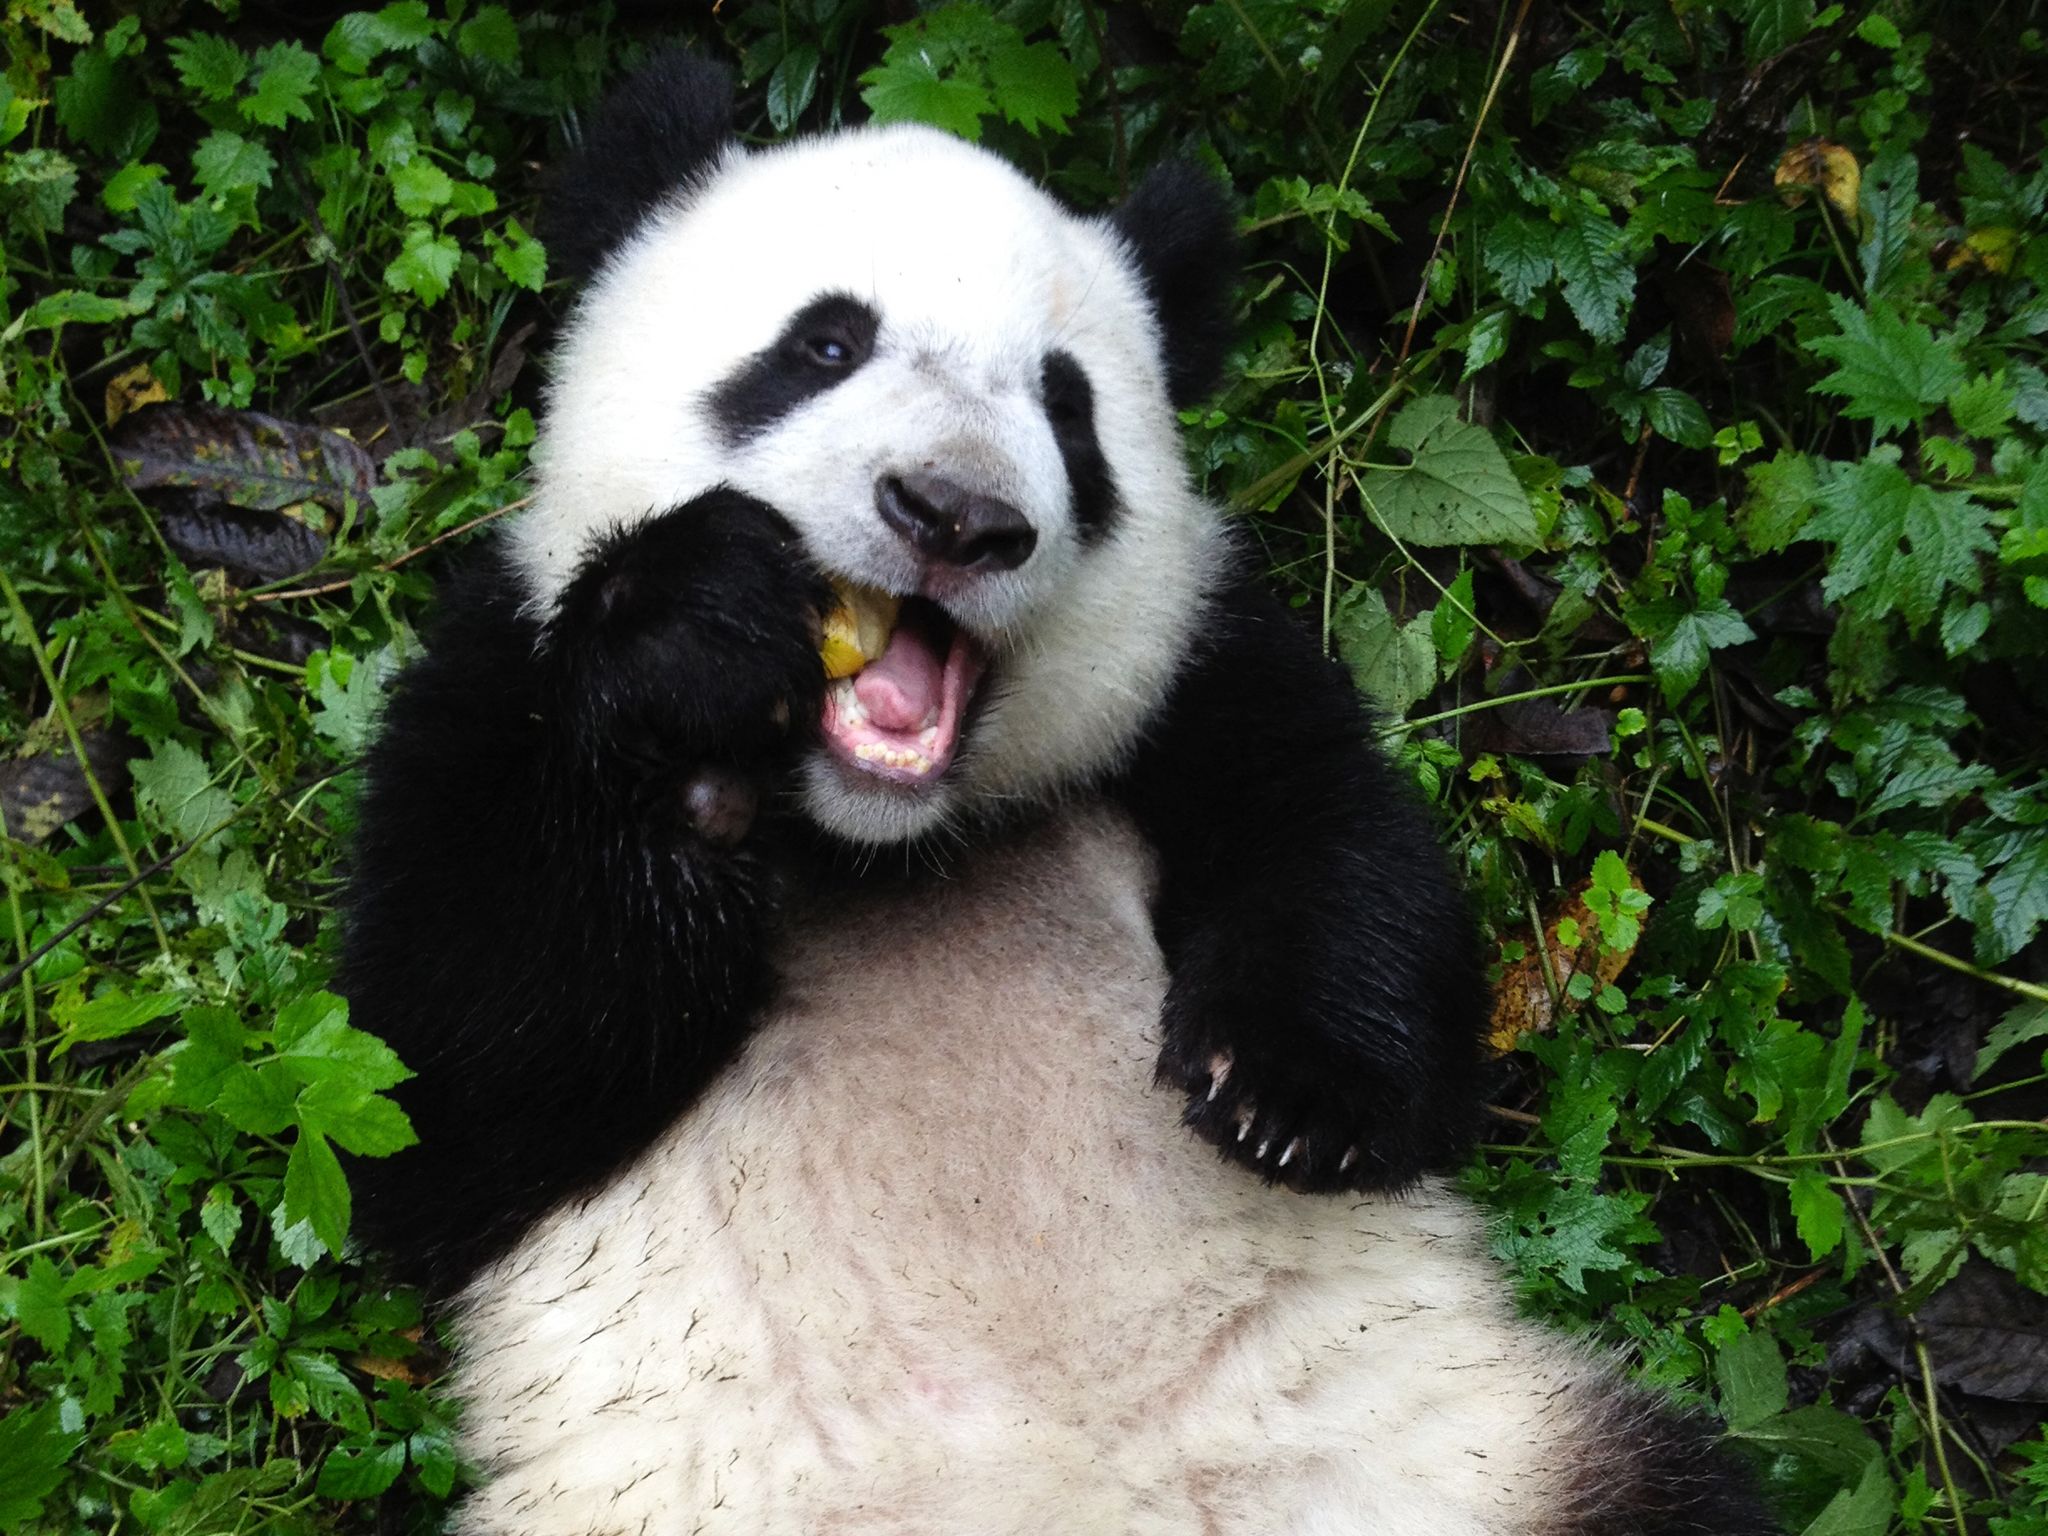 مركز وولونغ لتربية الباندا، مقاطعة سيتشوان، الصين:... [Photo of the day - سبتمبر 2014]